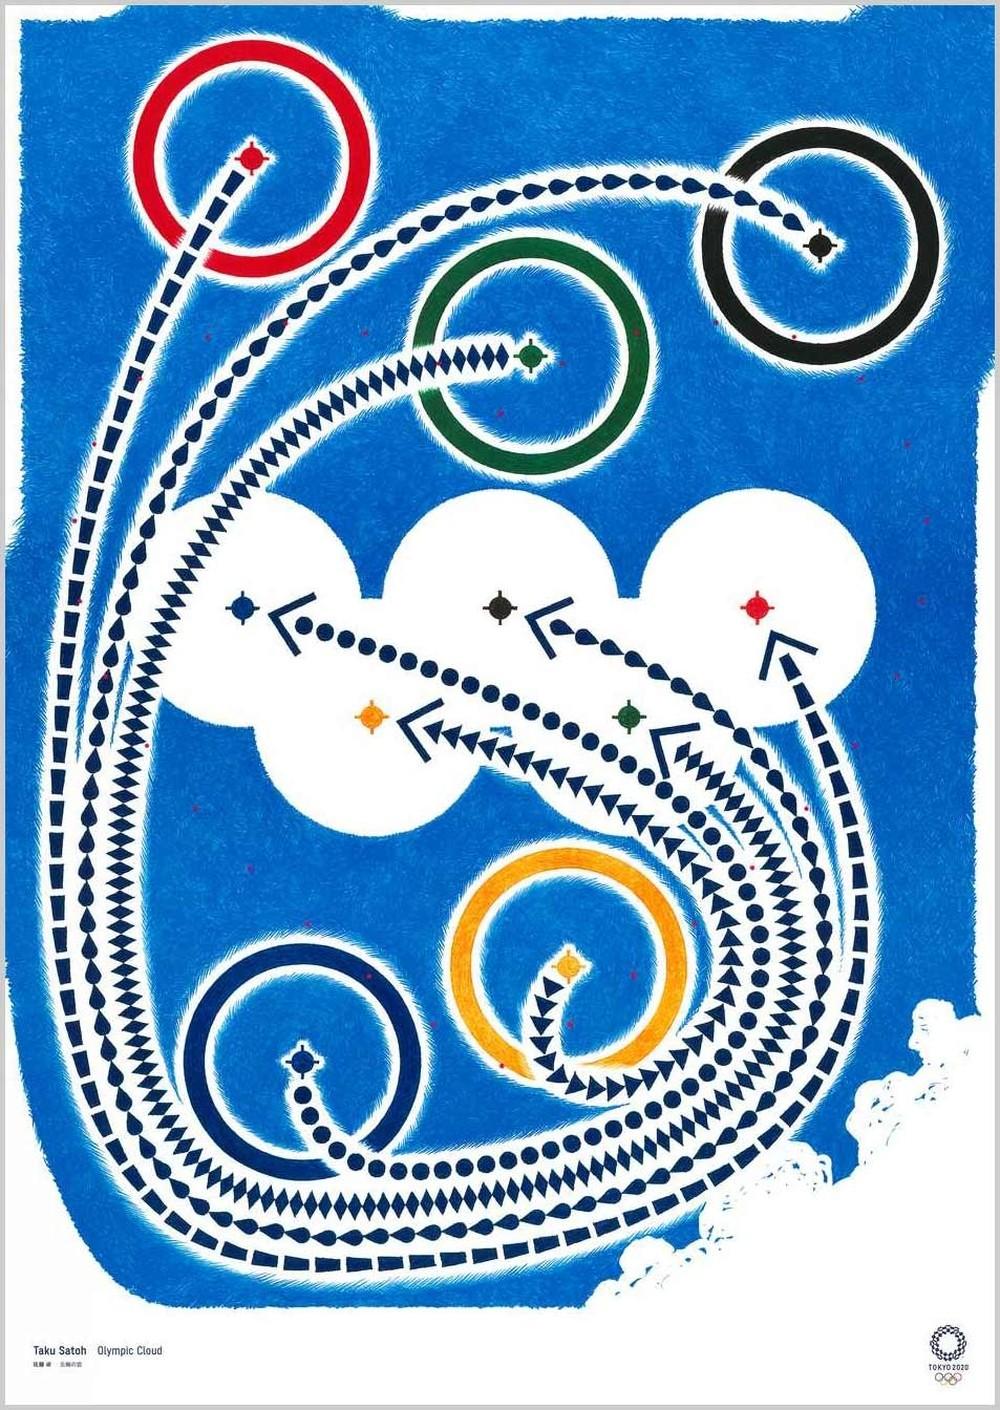 Tóqueo, JAPÃO, JANEIRO. 20 anos. 2020: pictograma de vôlei e anéis olímpicos.  Papel de parede original para o jogo olímpico — Fotografia de Stock  Editorial © kovop58@gmail.com #334719222